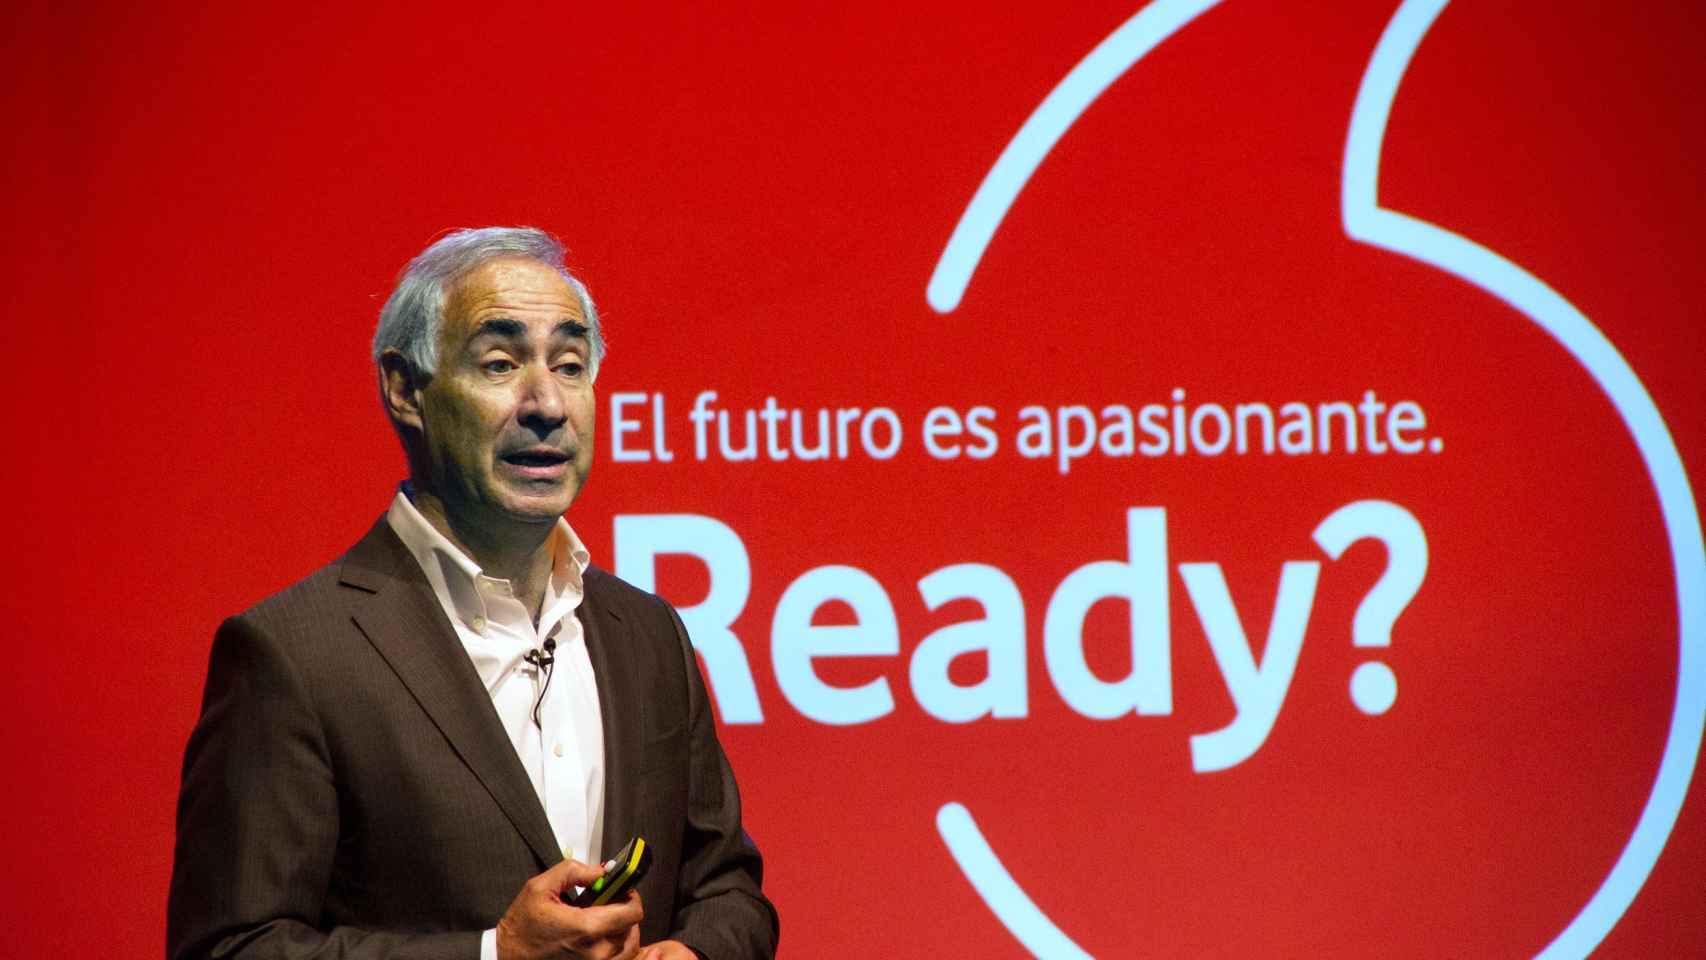 Vodafone ingresó un 1 % más en España en su primer semestre fiscal